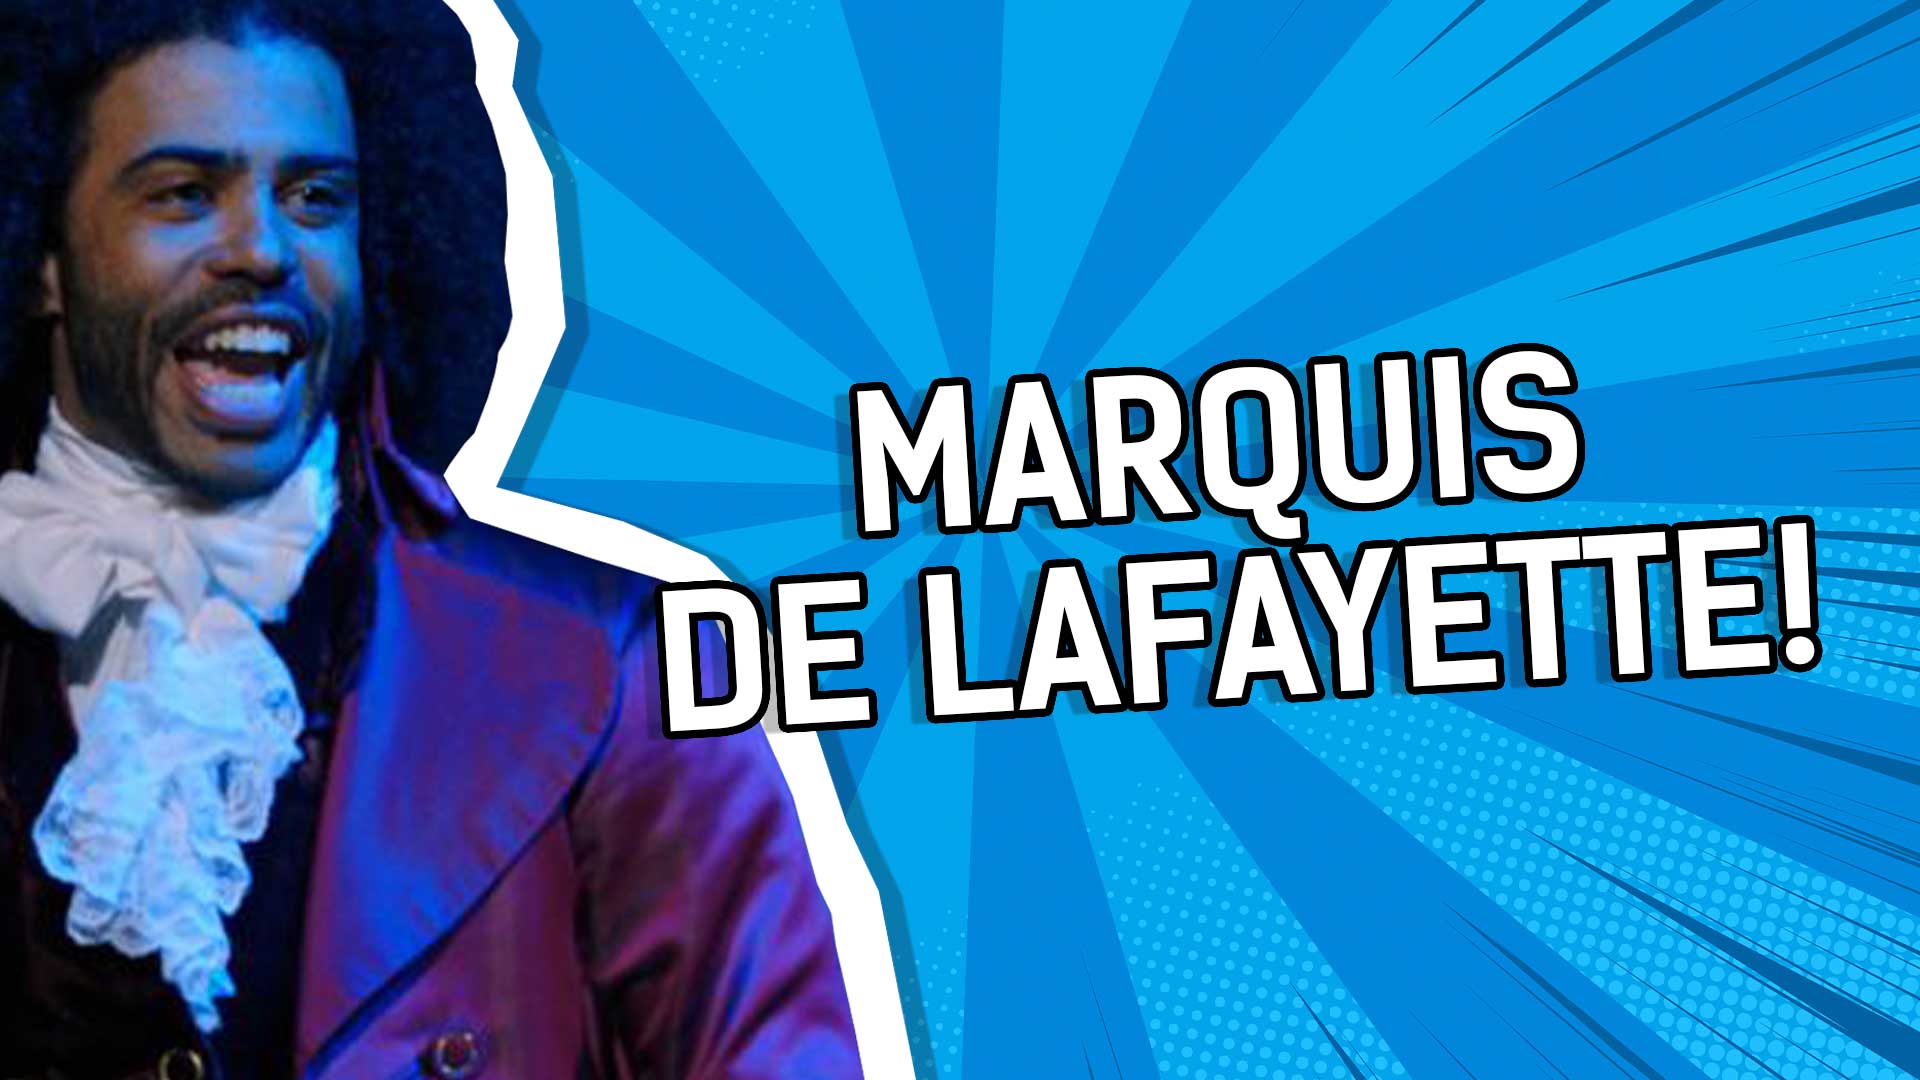 Marquis de Lafayette!